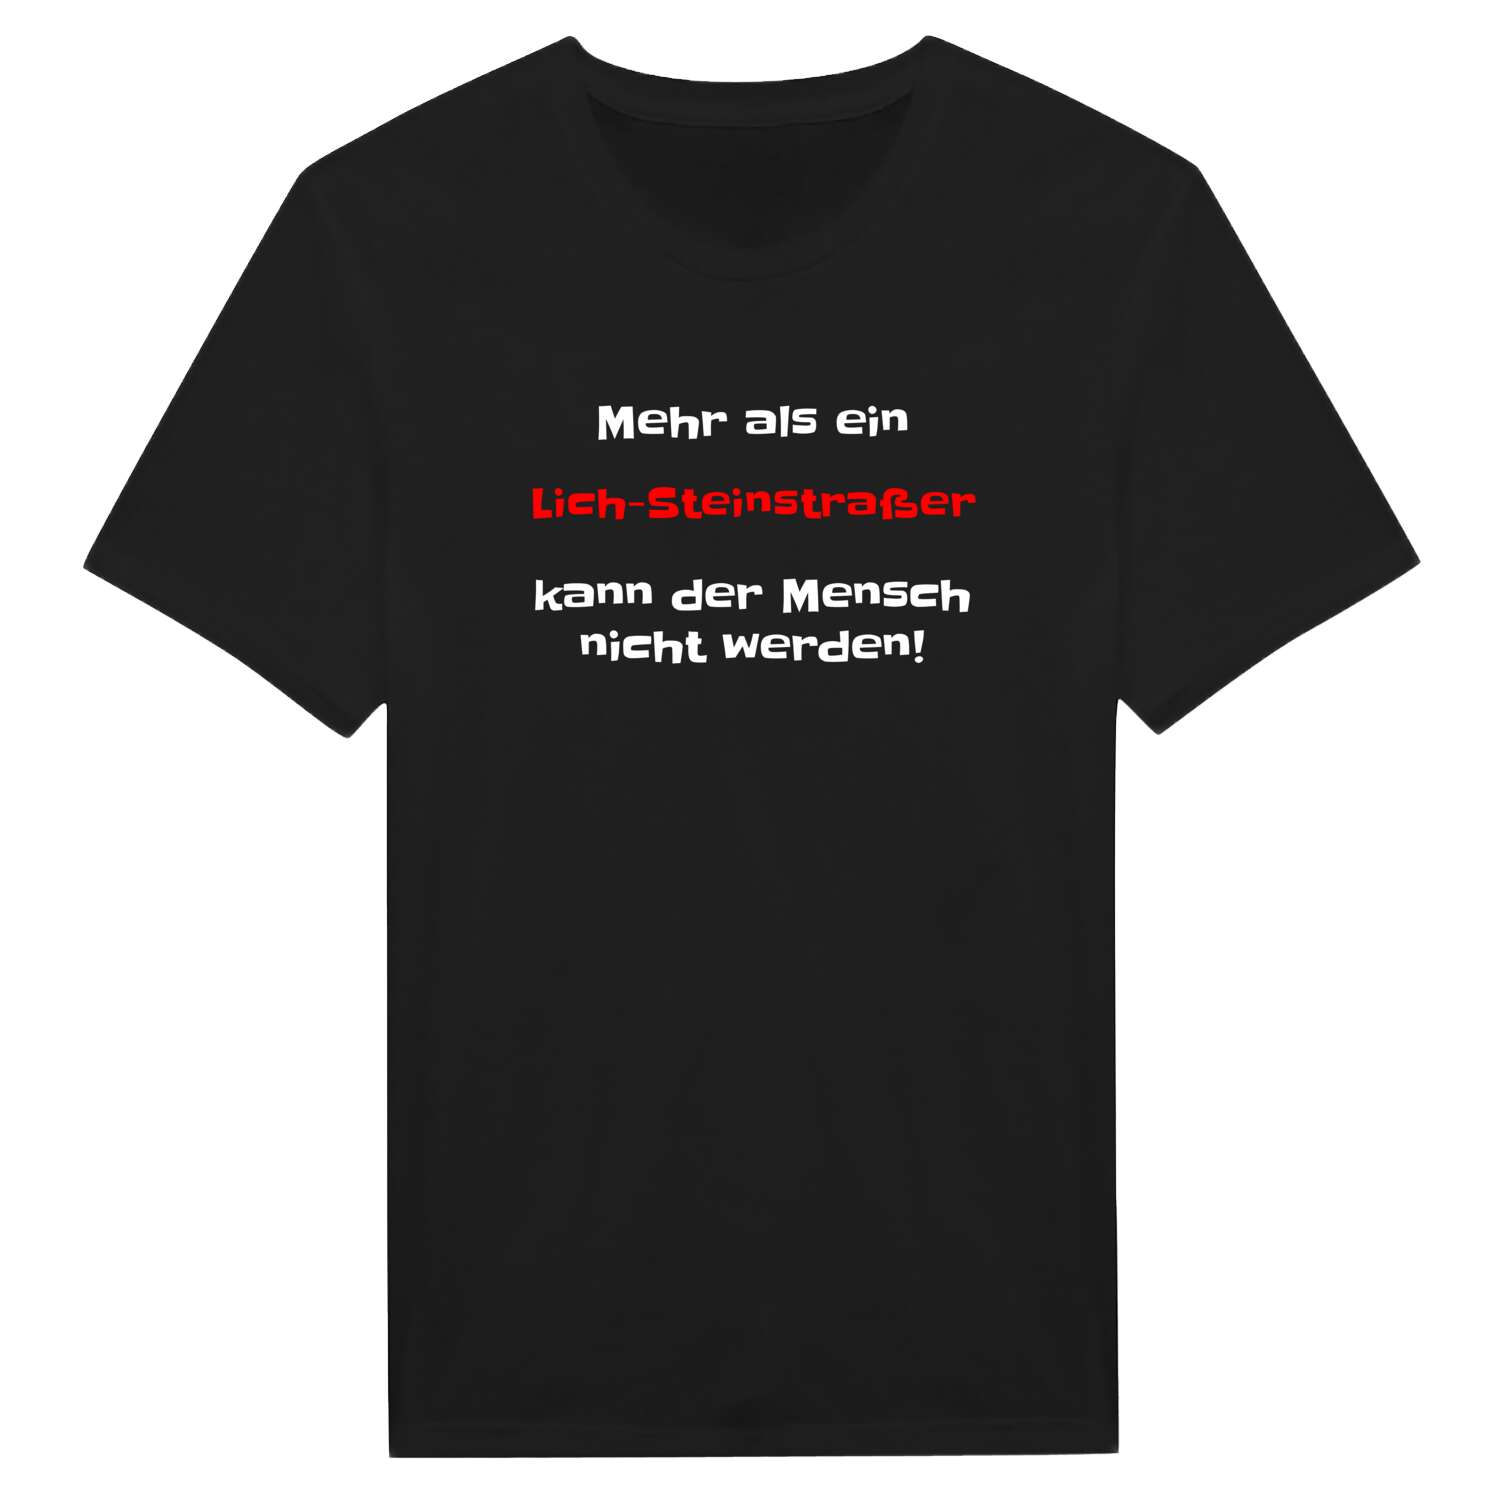 Lich-Steinstraß T-Shirt »Mehr als ein«